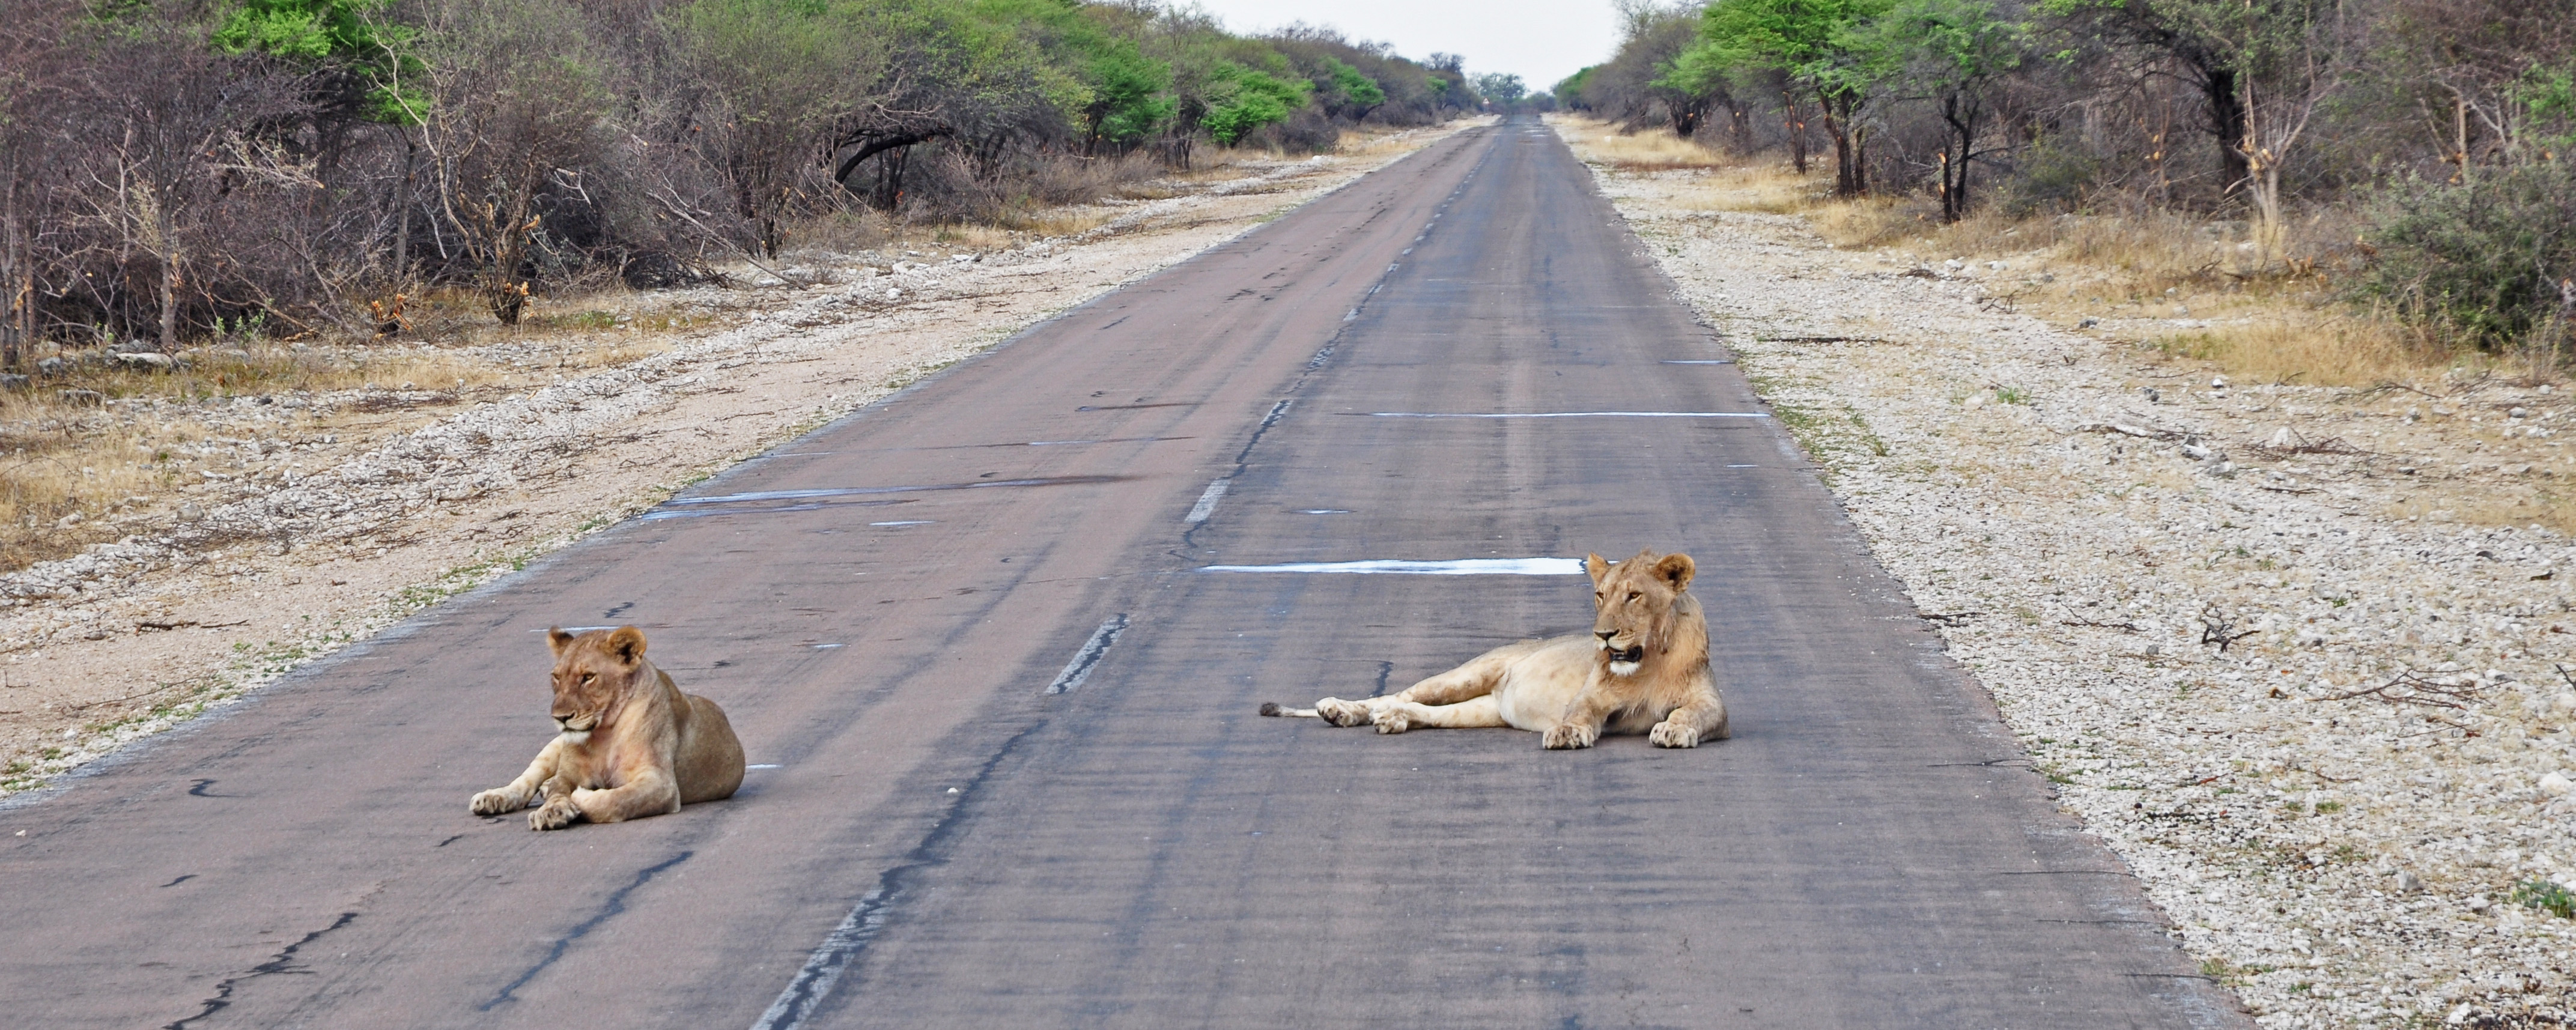 Lionnes-sur-la-route-Namibie-Etosha